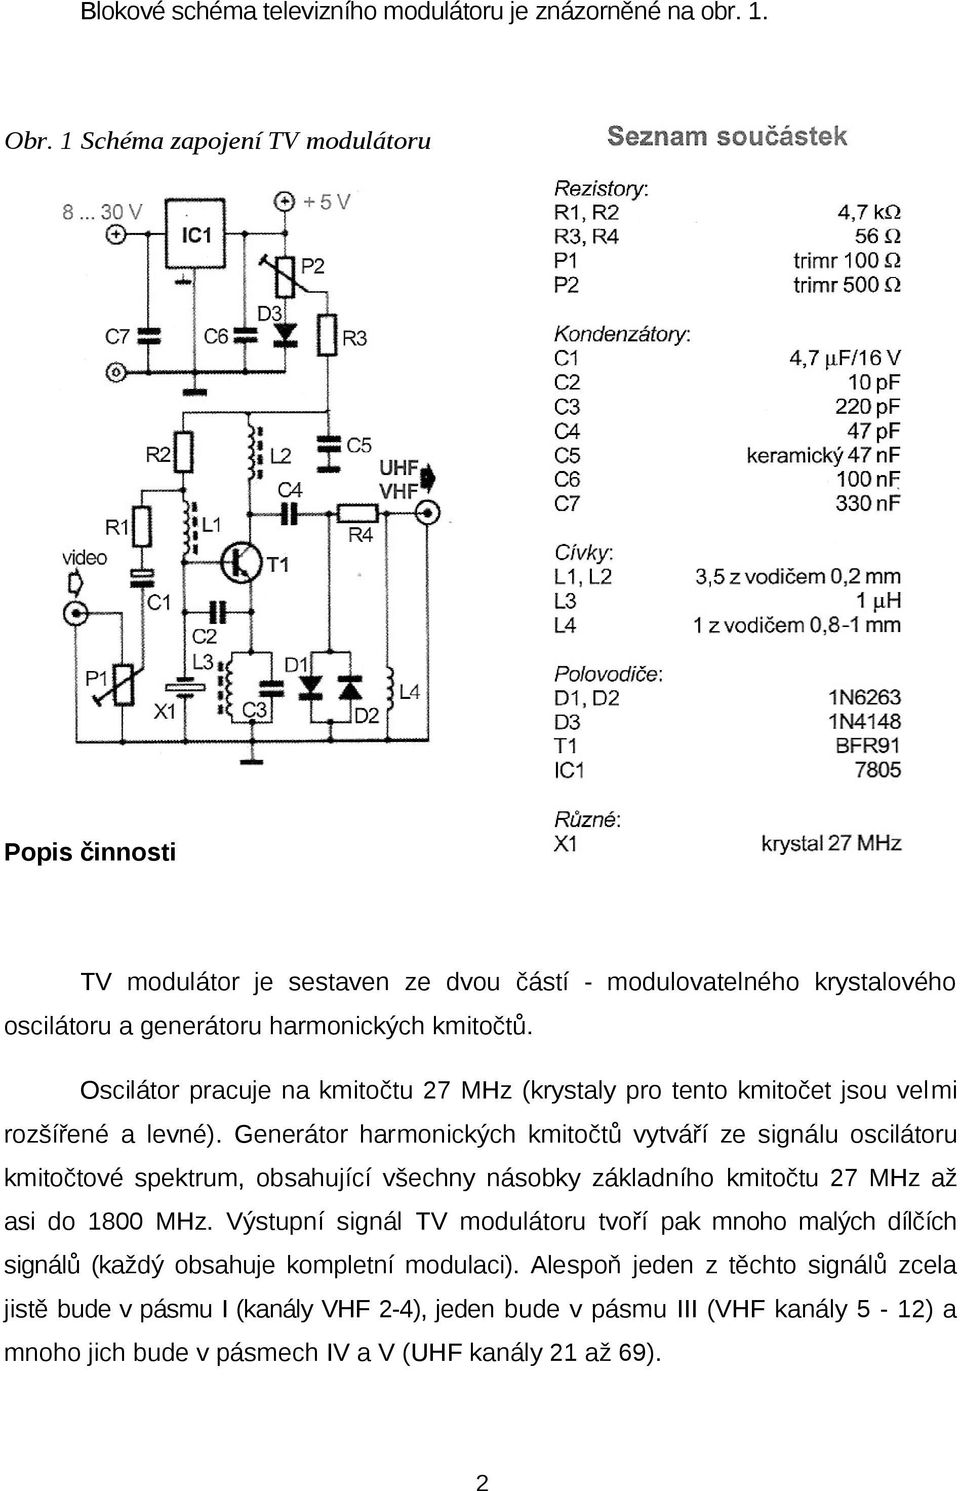 Oscilátor pracuje na kmitočtu 27 MHz (krystaly pro tento kmitočet jsou velmi rozšířené a levné).